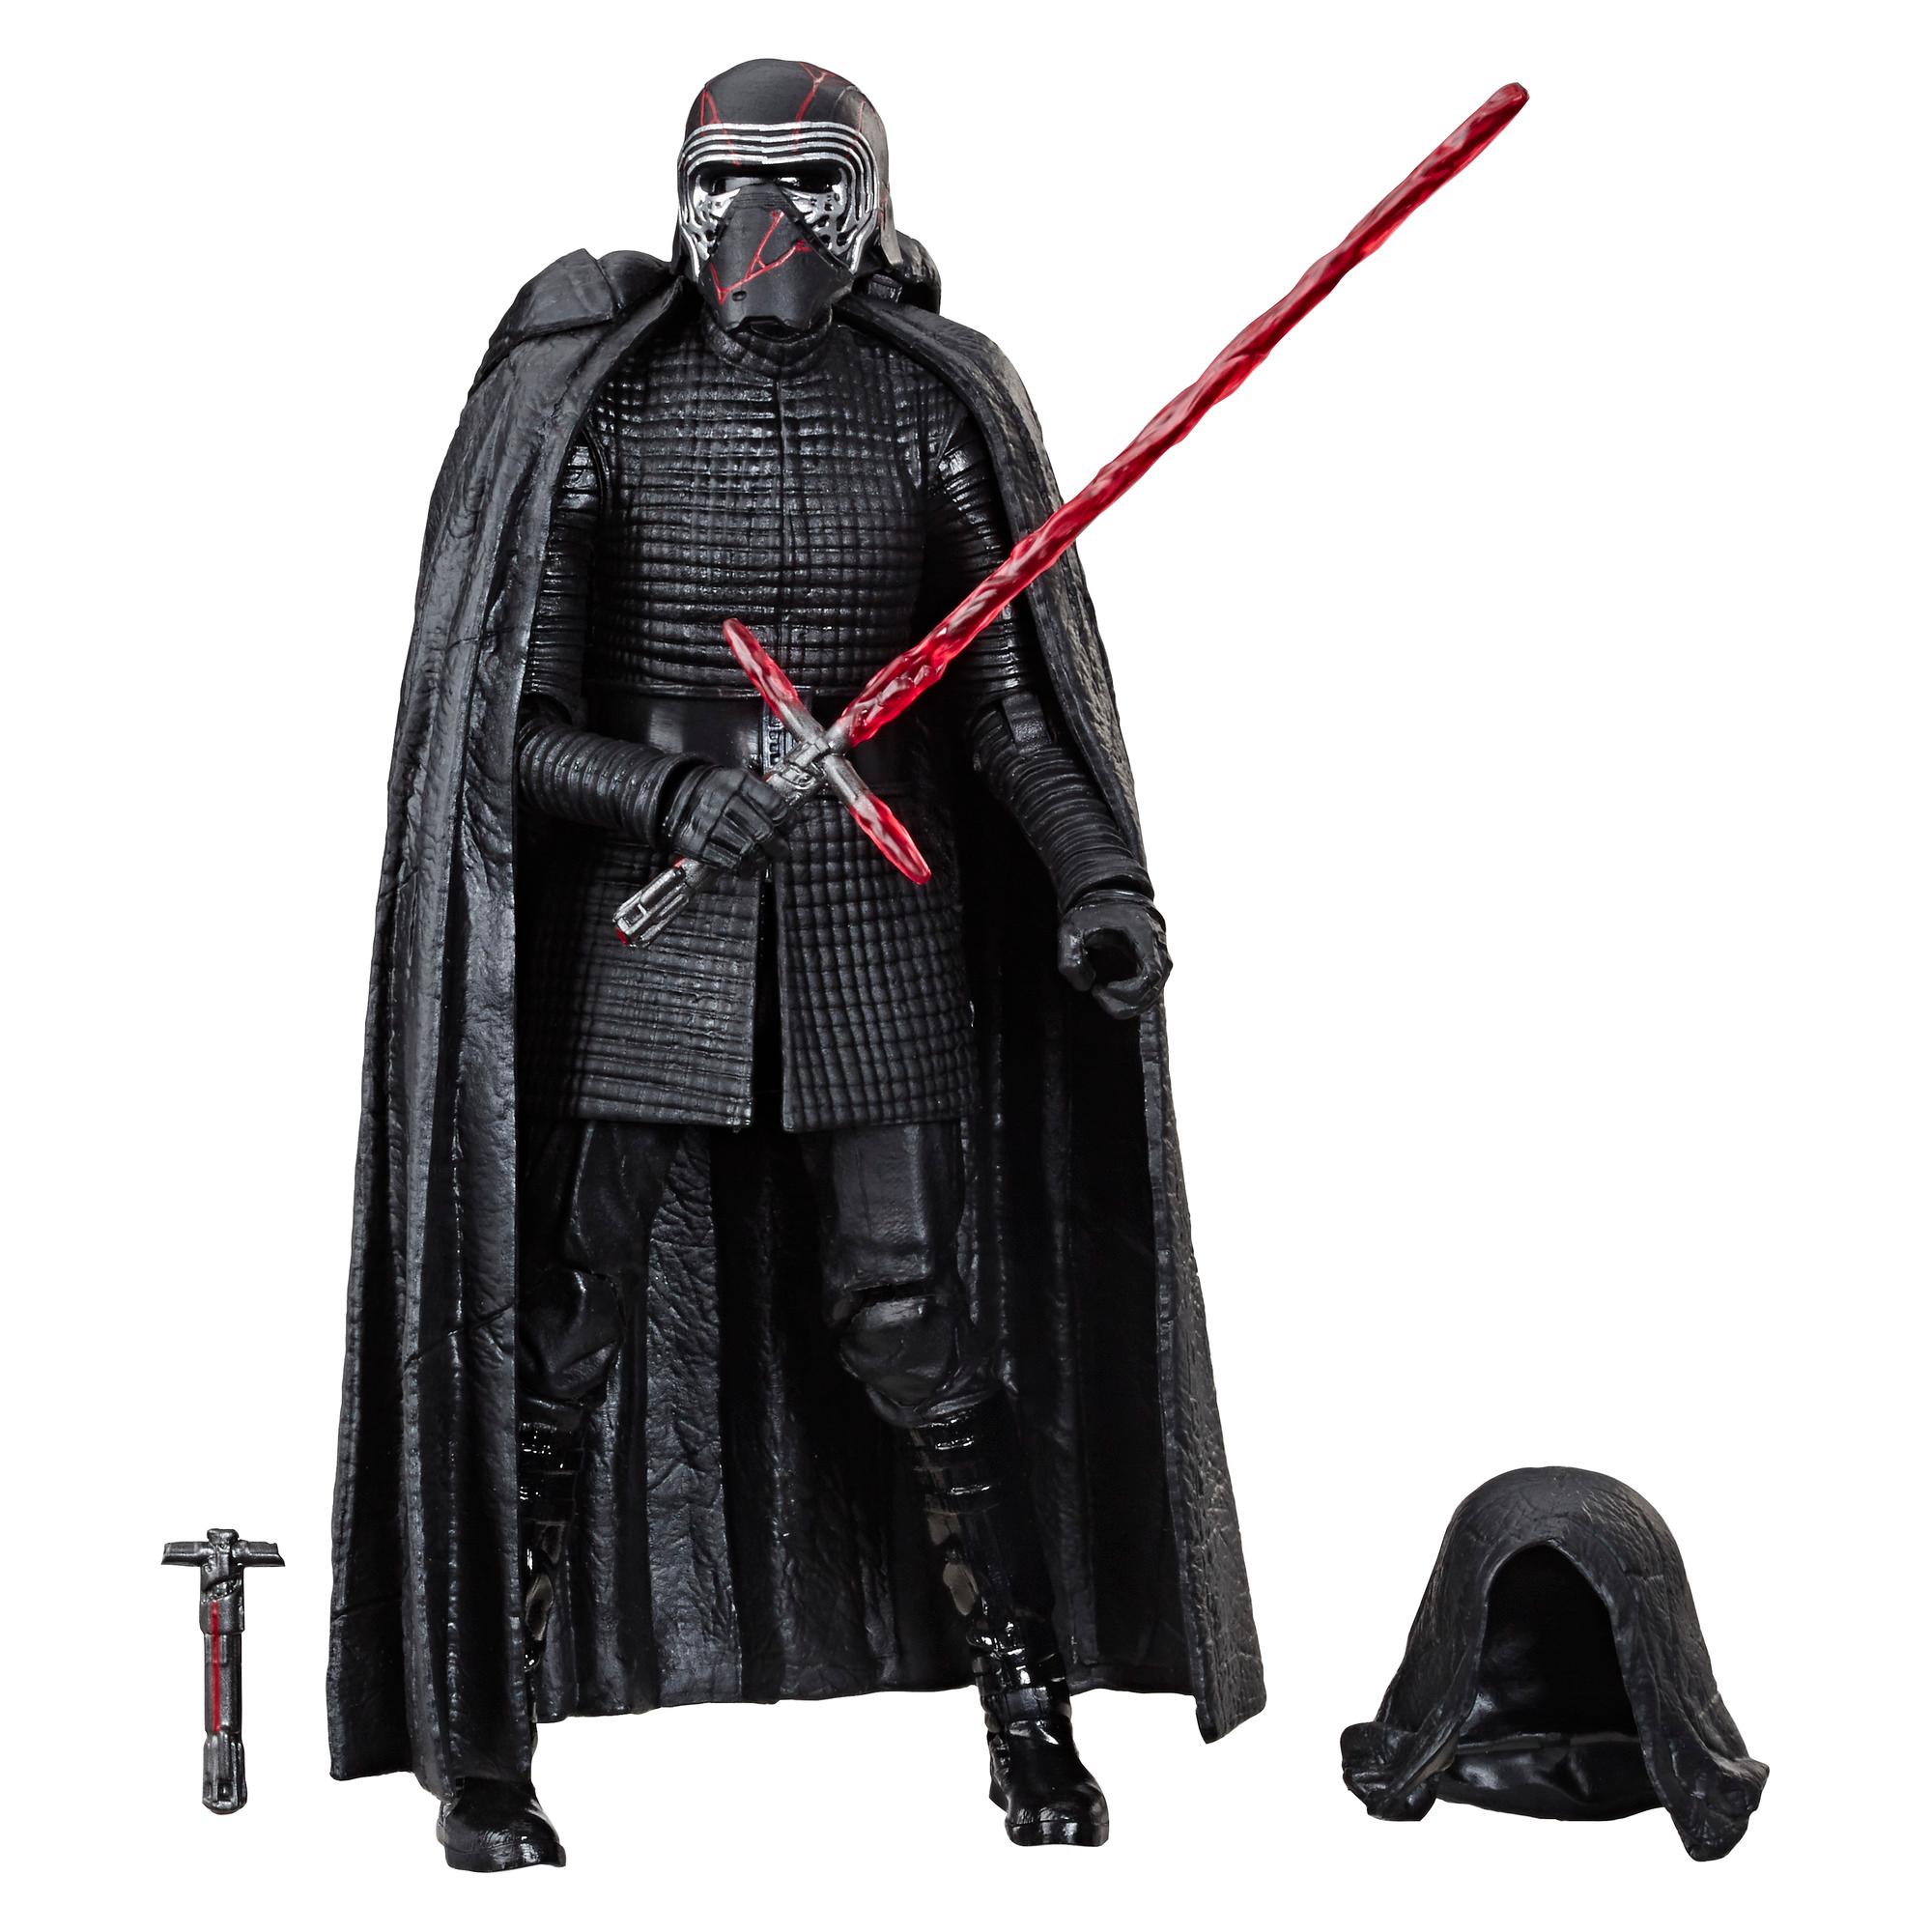 environ 15.24 cm figure Hasbro Disney Star Wars Darth Vader Kylo REN Lot de 2 6 in 